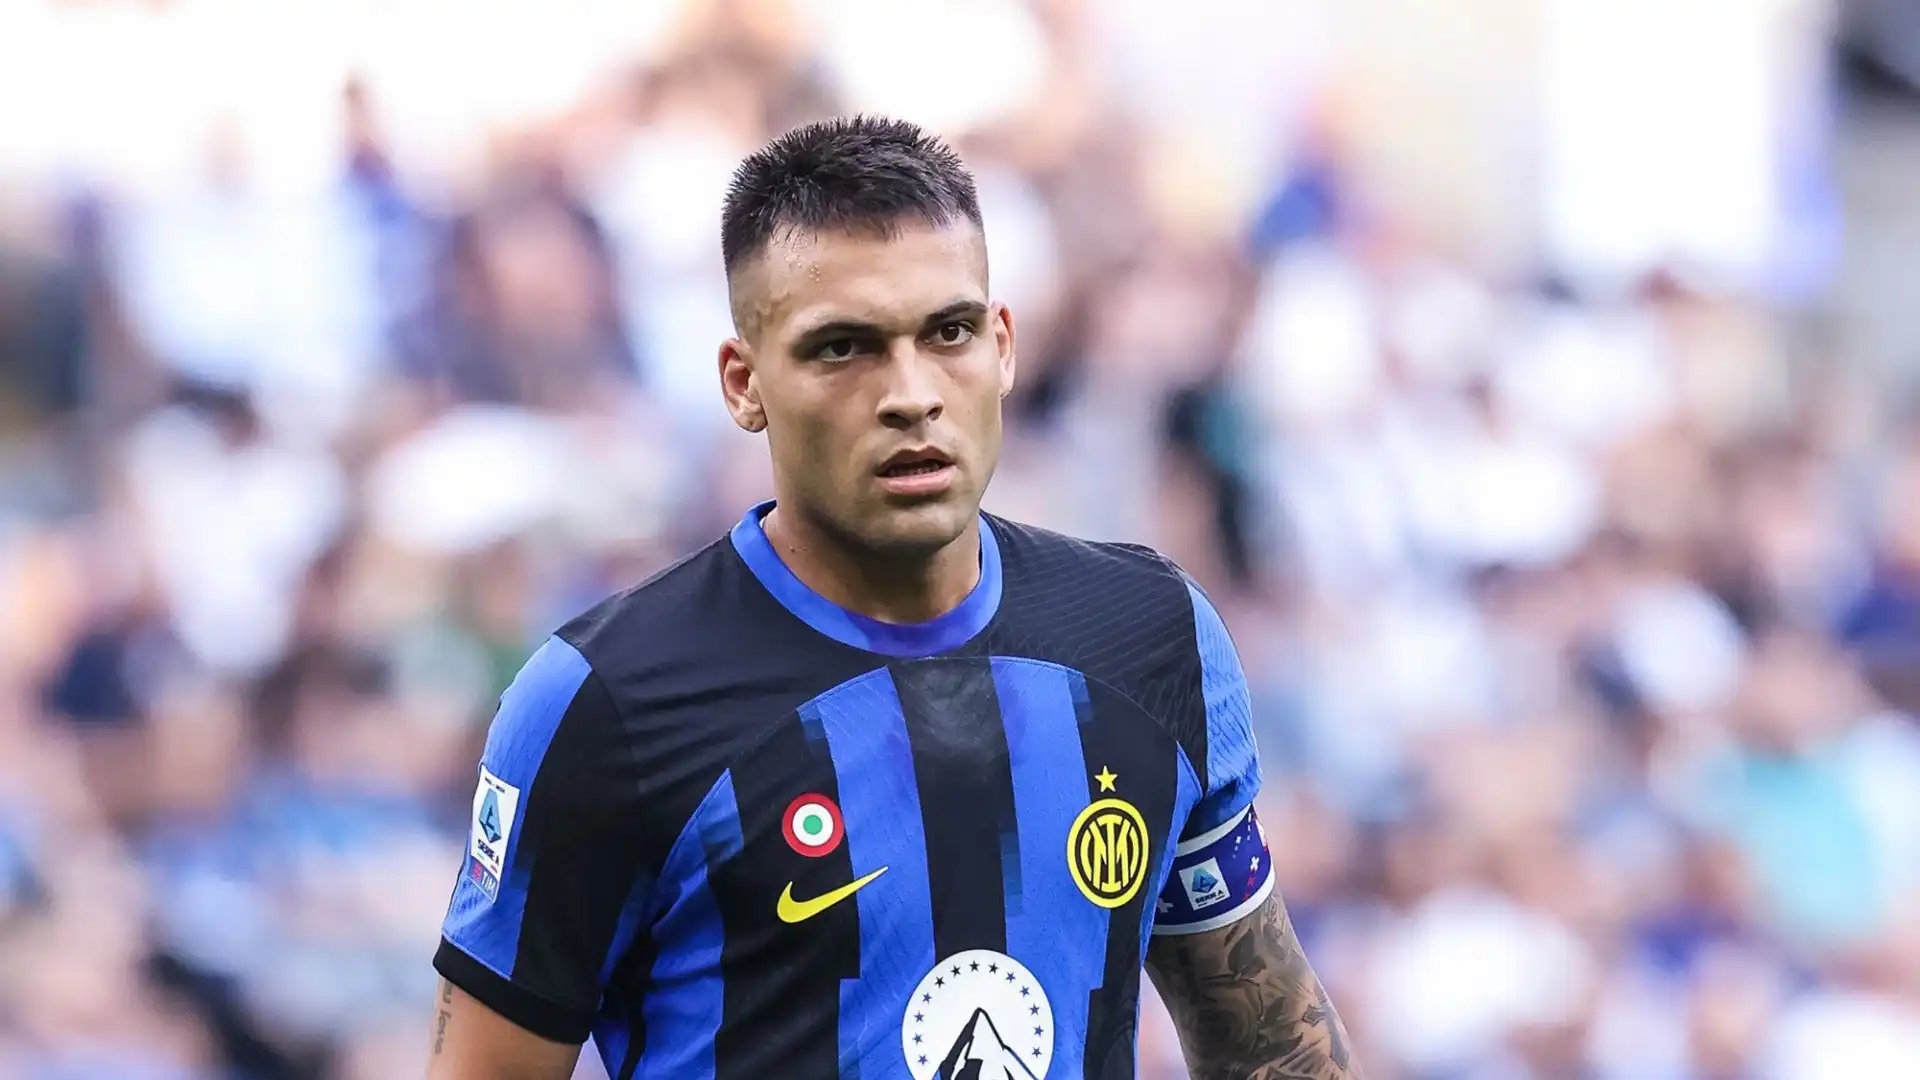 L'Inter e Lautaro Martinez sono ancora distanti nella trattativa per il rinnovo del contratto